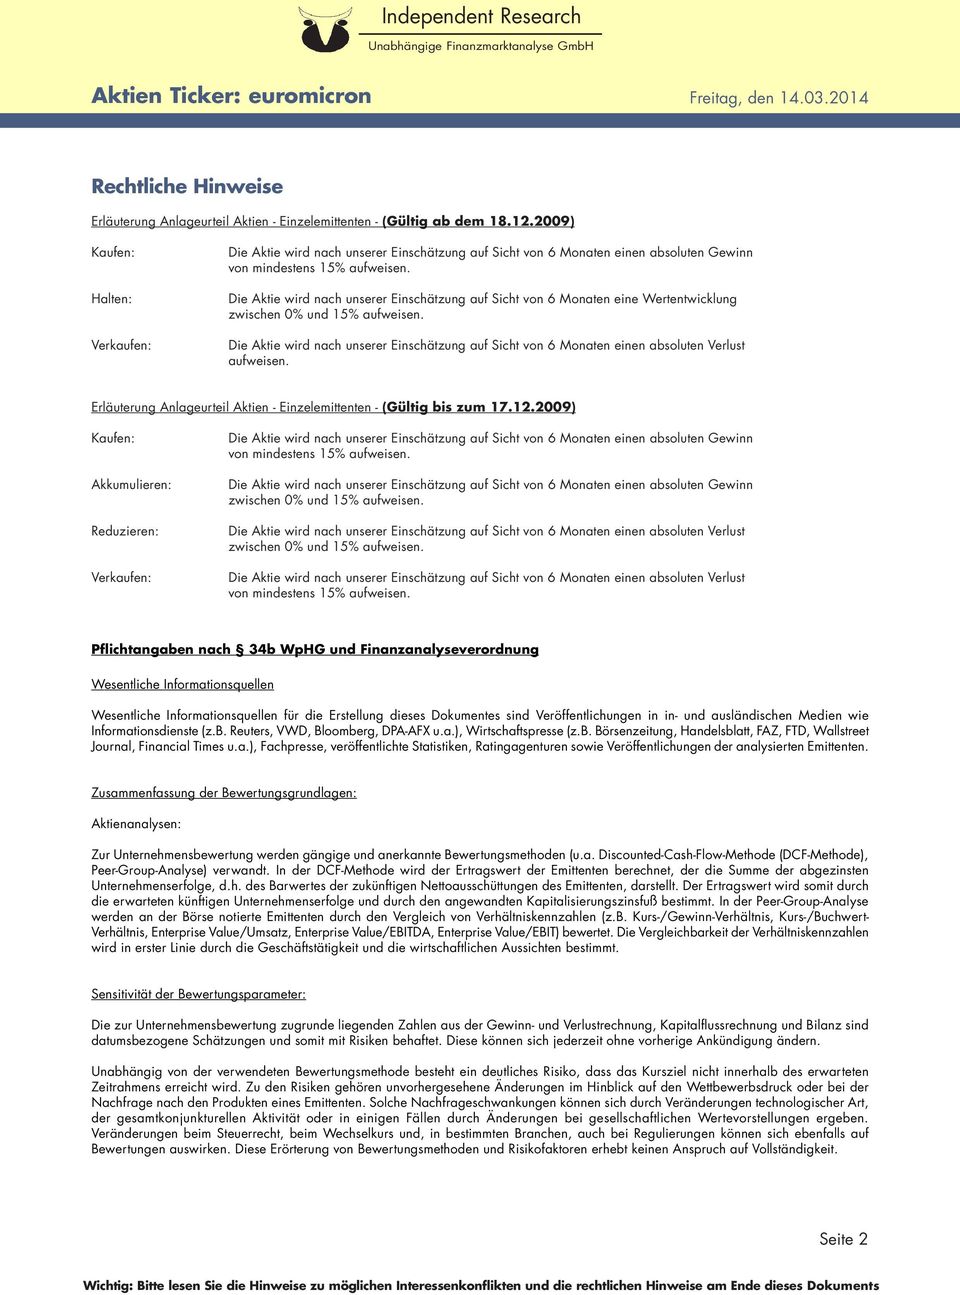 Erläuterung Anlageurteil Aktien - Einzelemittenten - (Gültig bis zum 17.12.